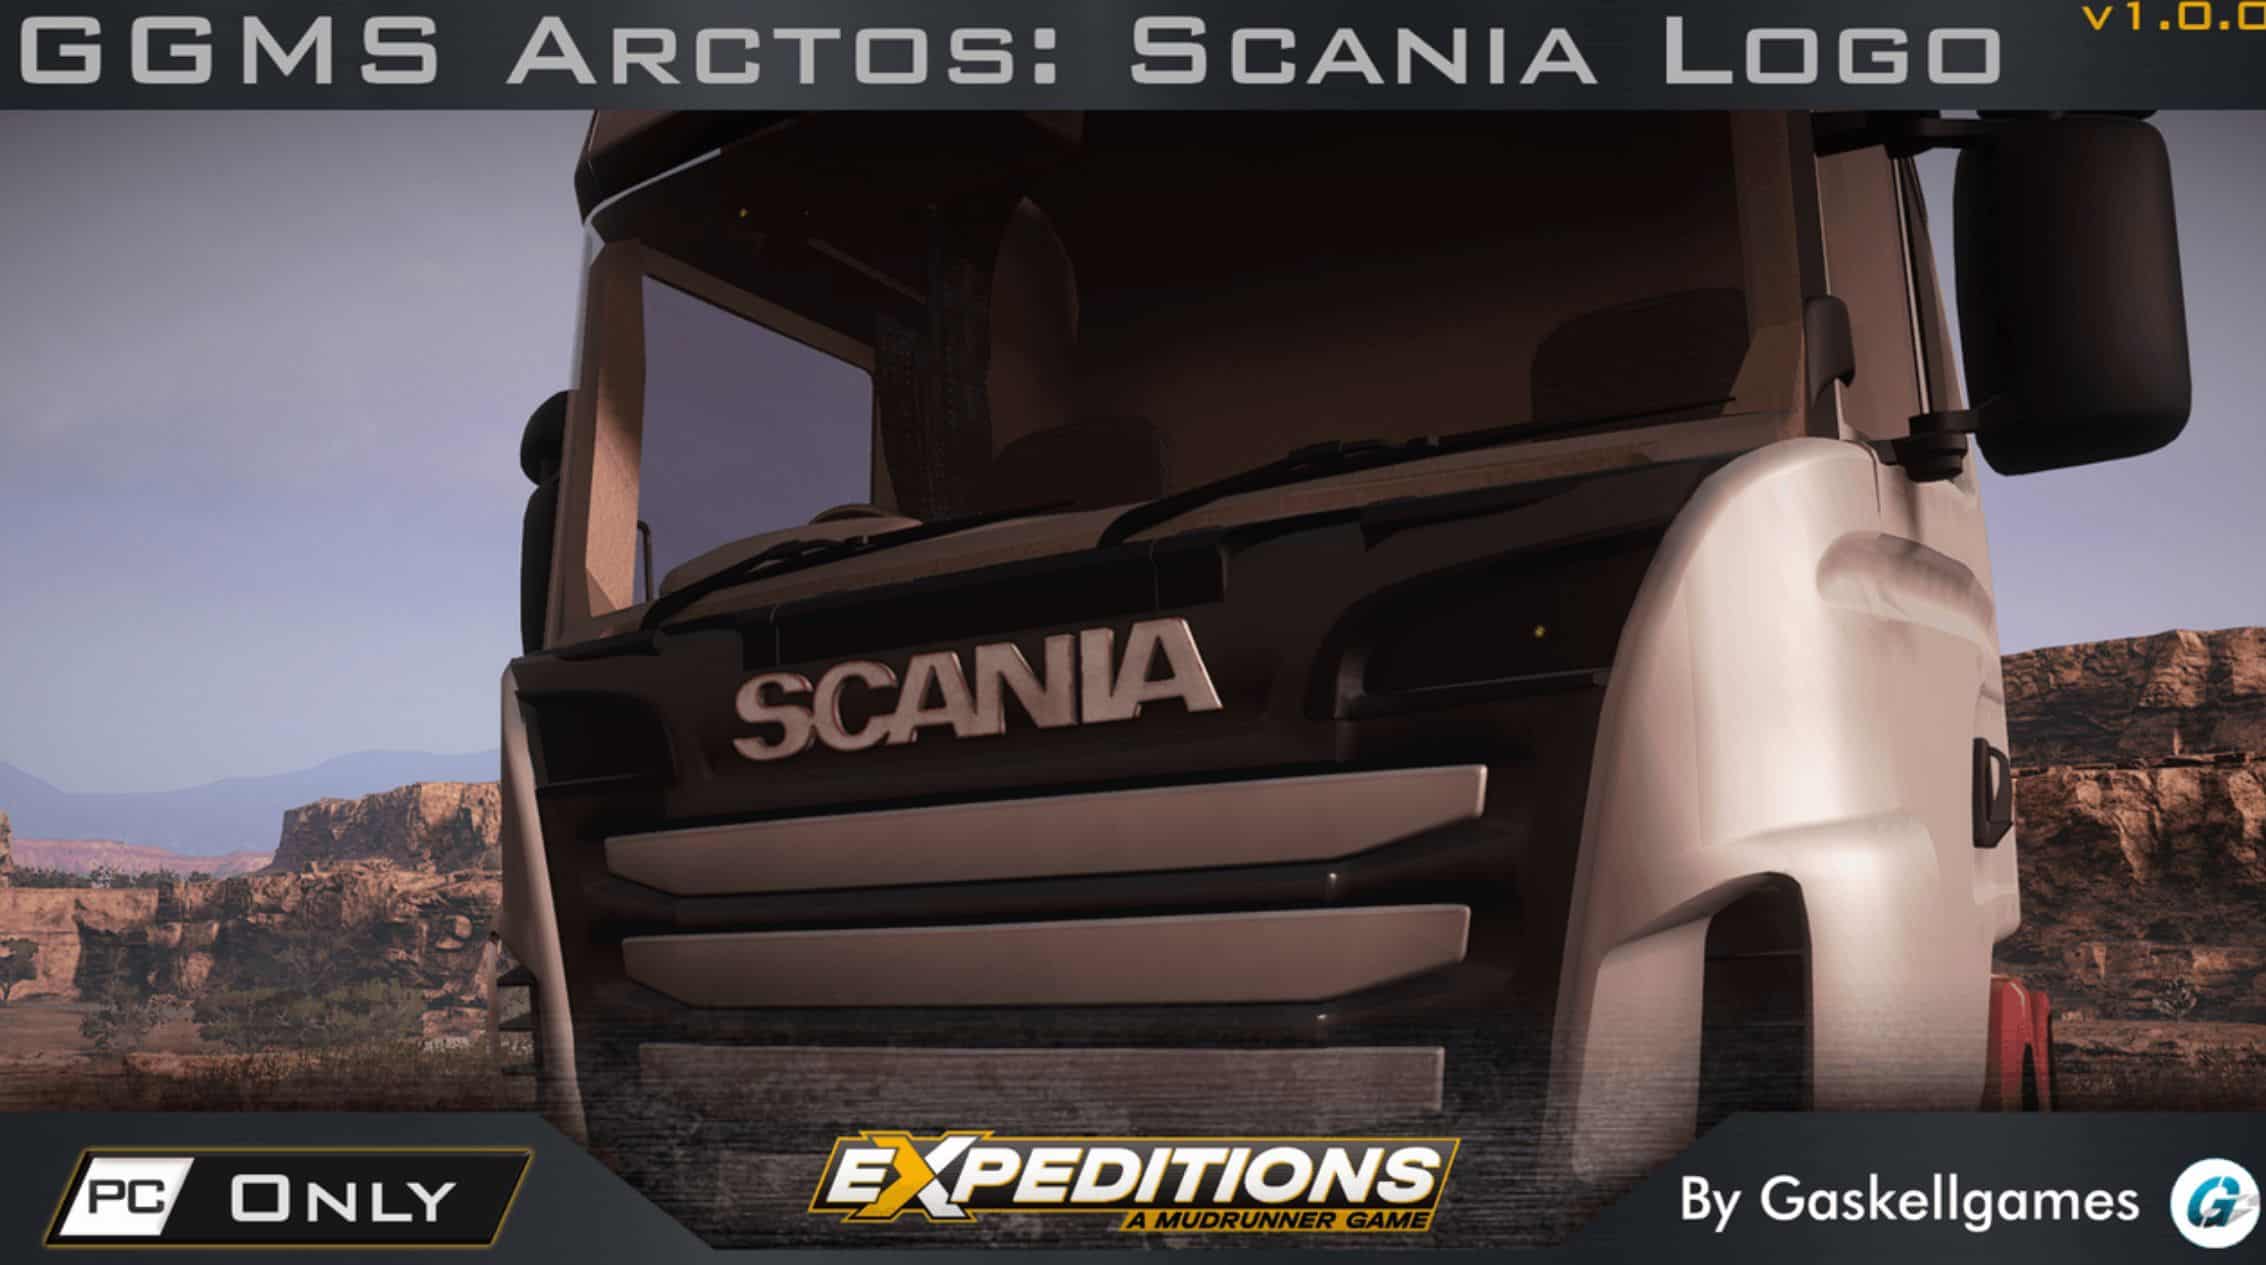 GGMS Arctos: Scania Logo V1.0